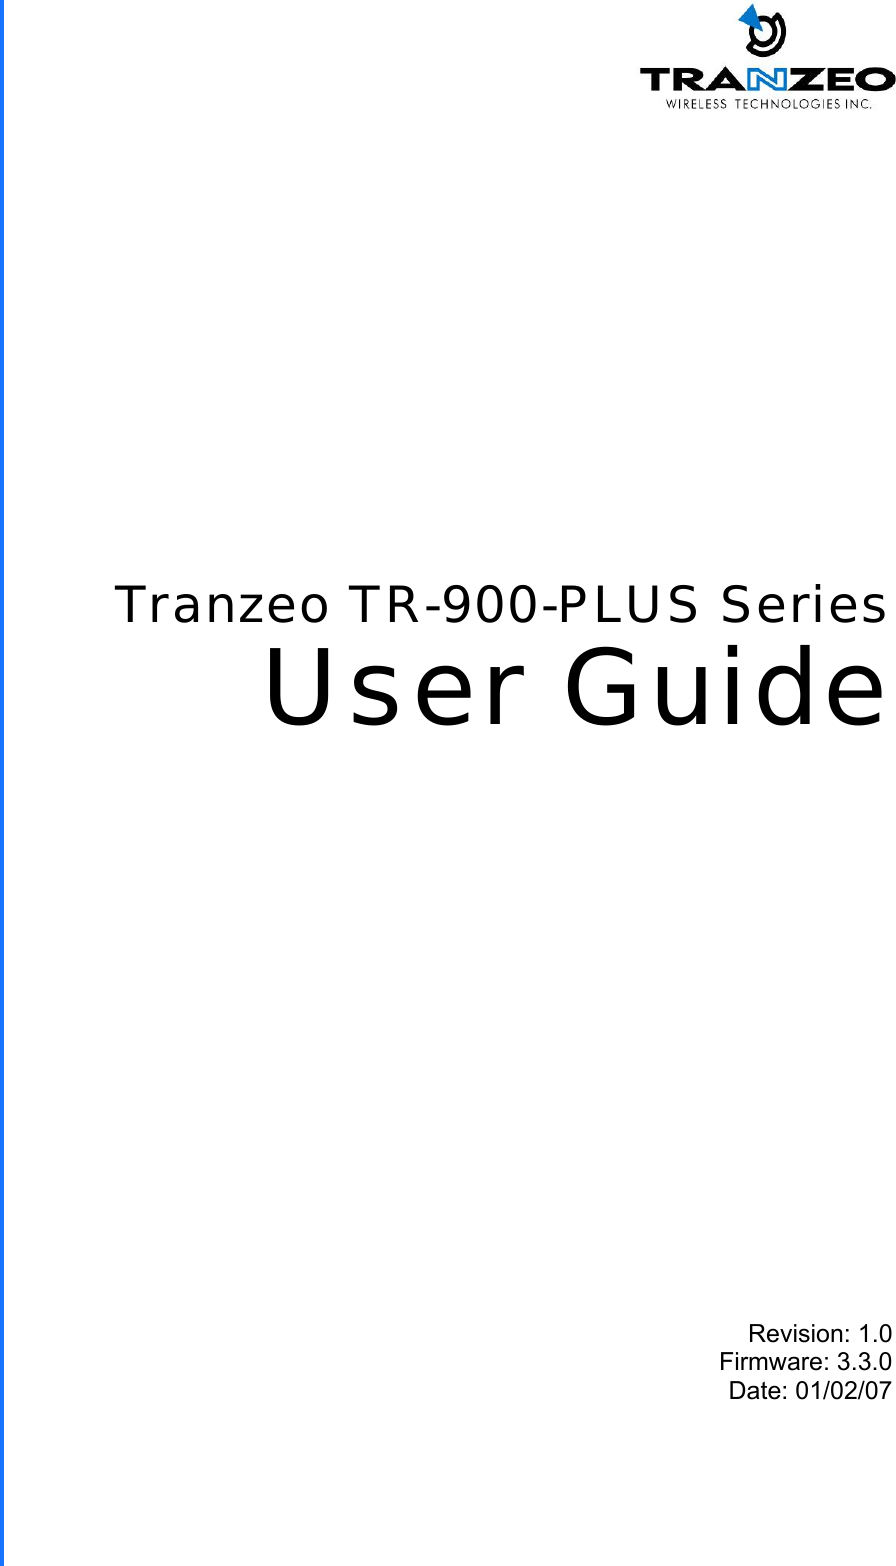  TRANZEO TR-900-PLUS Revision: 1.0 Firmware: 3.3.0 Date: 01/02/07 Tranzeo TR-900-PLUS Series User Guide 